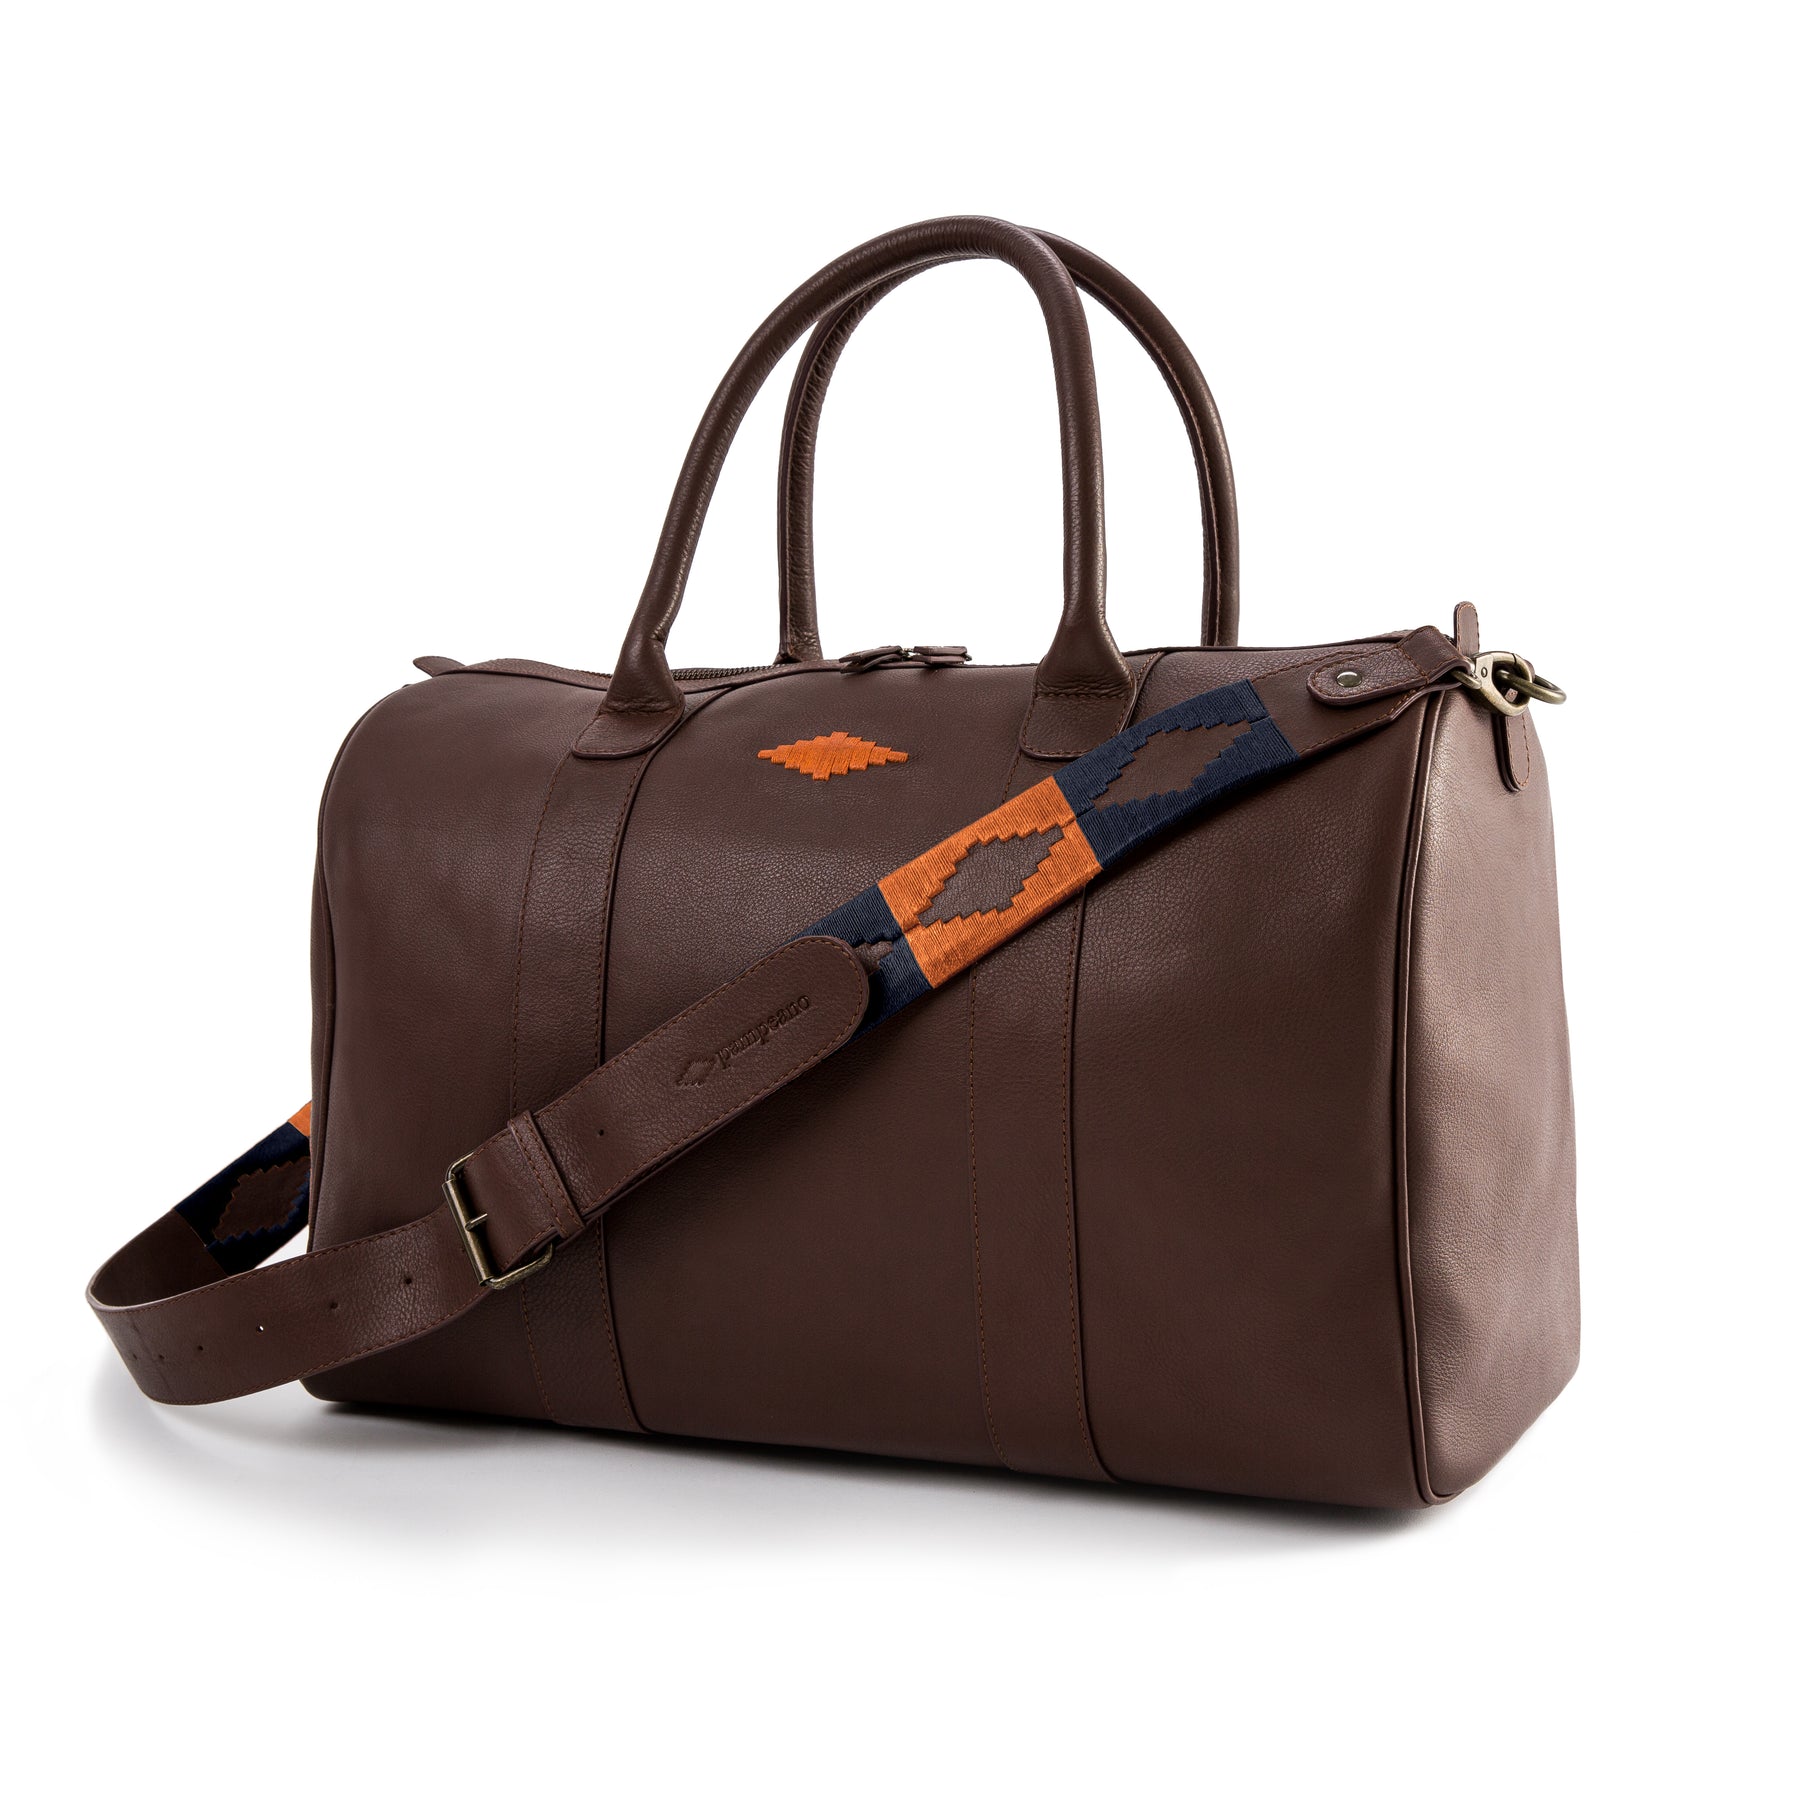 31% OFF on Bleu Wheeler Small Travel Bag - Standard(Red, Grey) on Flipkart  | PaisaWapas.com